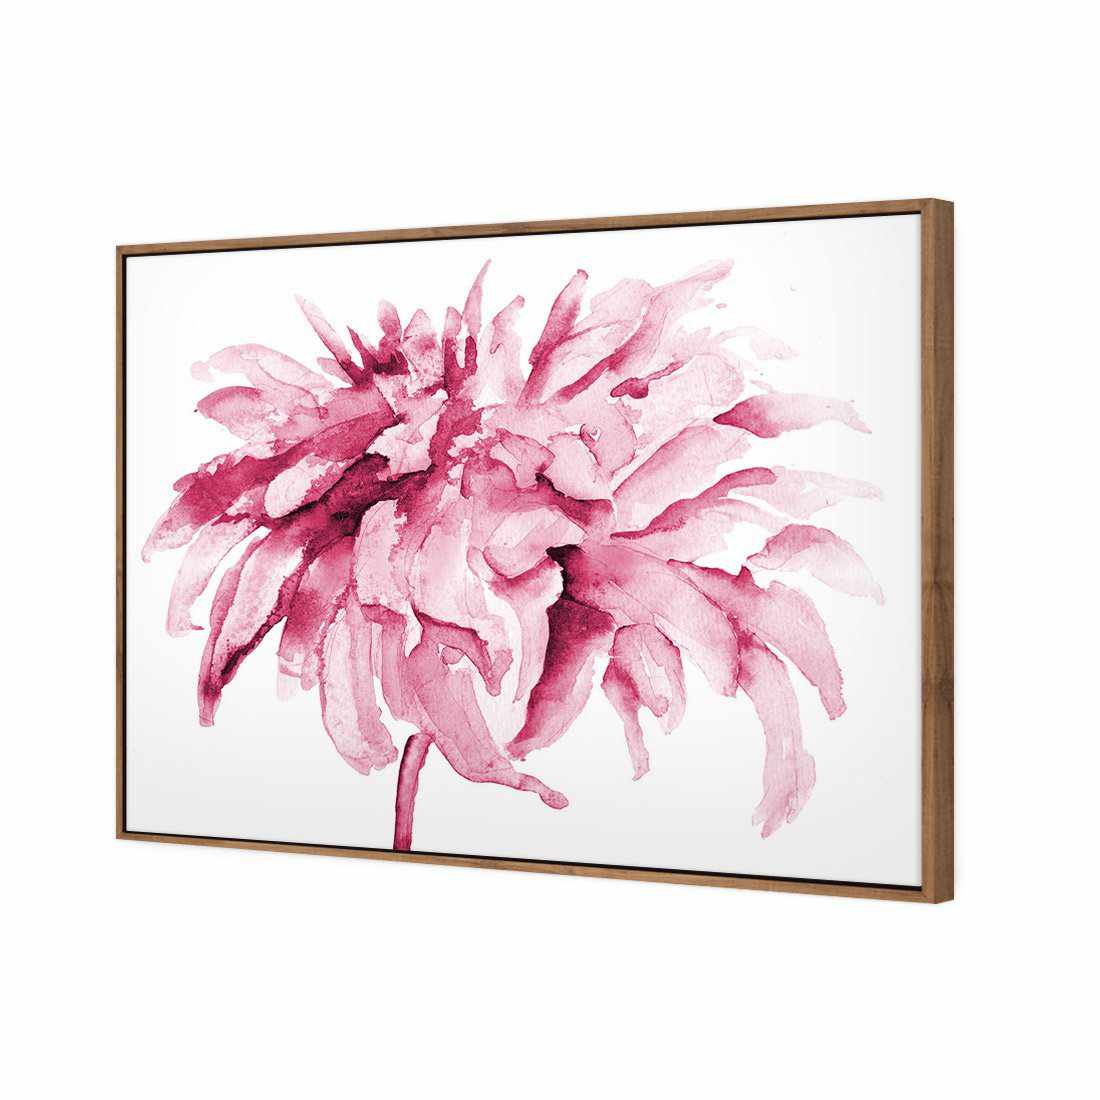 Fairy Floss, Pink Canvas Art-Canvas-Wall Art Designs-45x30cm-Canvas - Natural Frame-Wall Art Designs